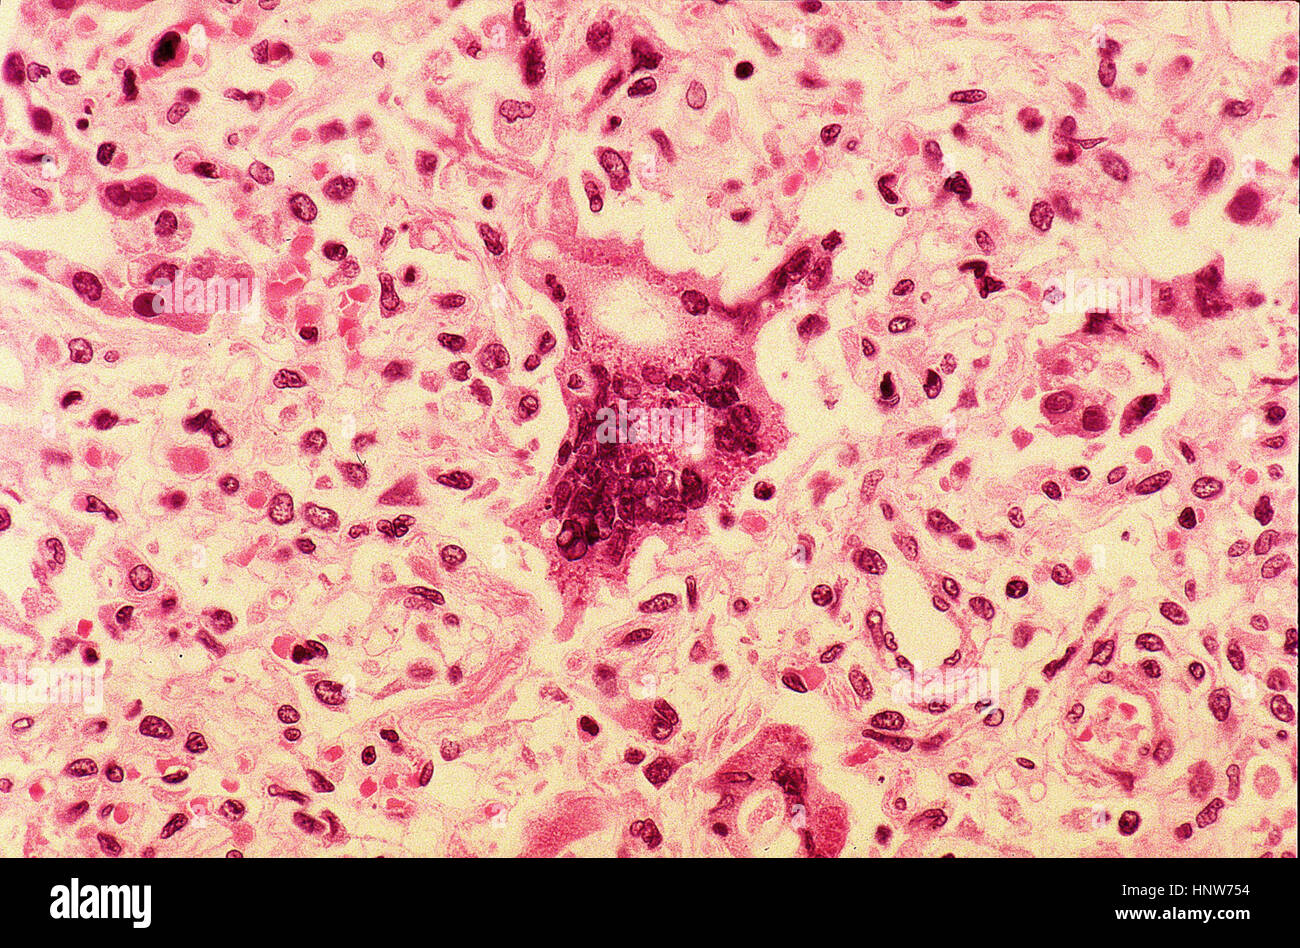 Célula gigante bajo microscopia de luz Foto de stock